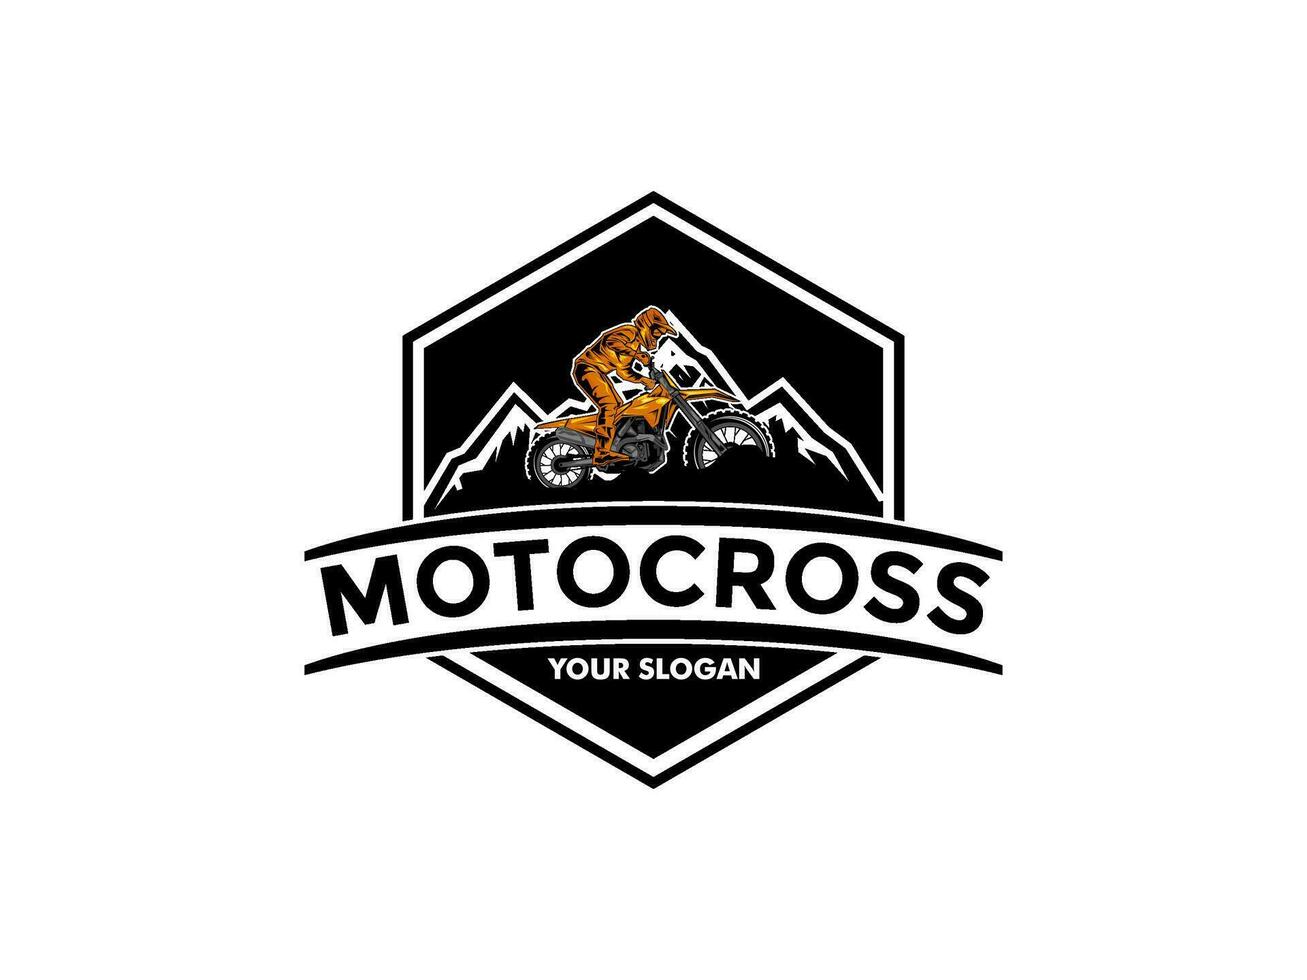 motorcross met een rijder Aan een motor, motorcross logo vector illustratie